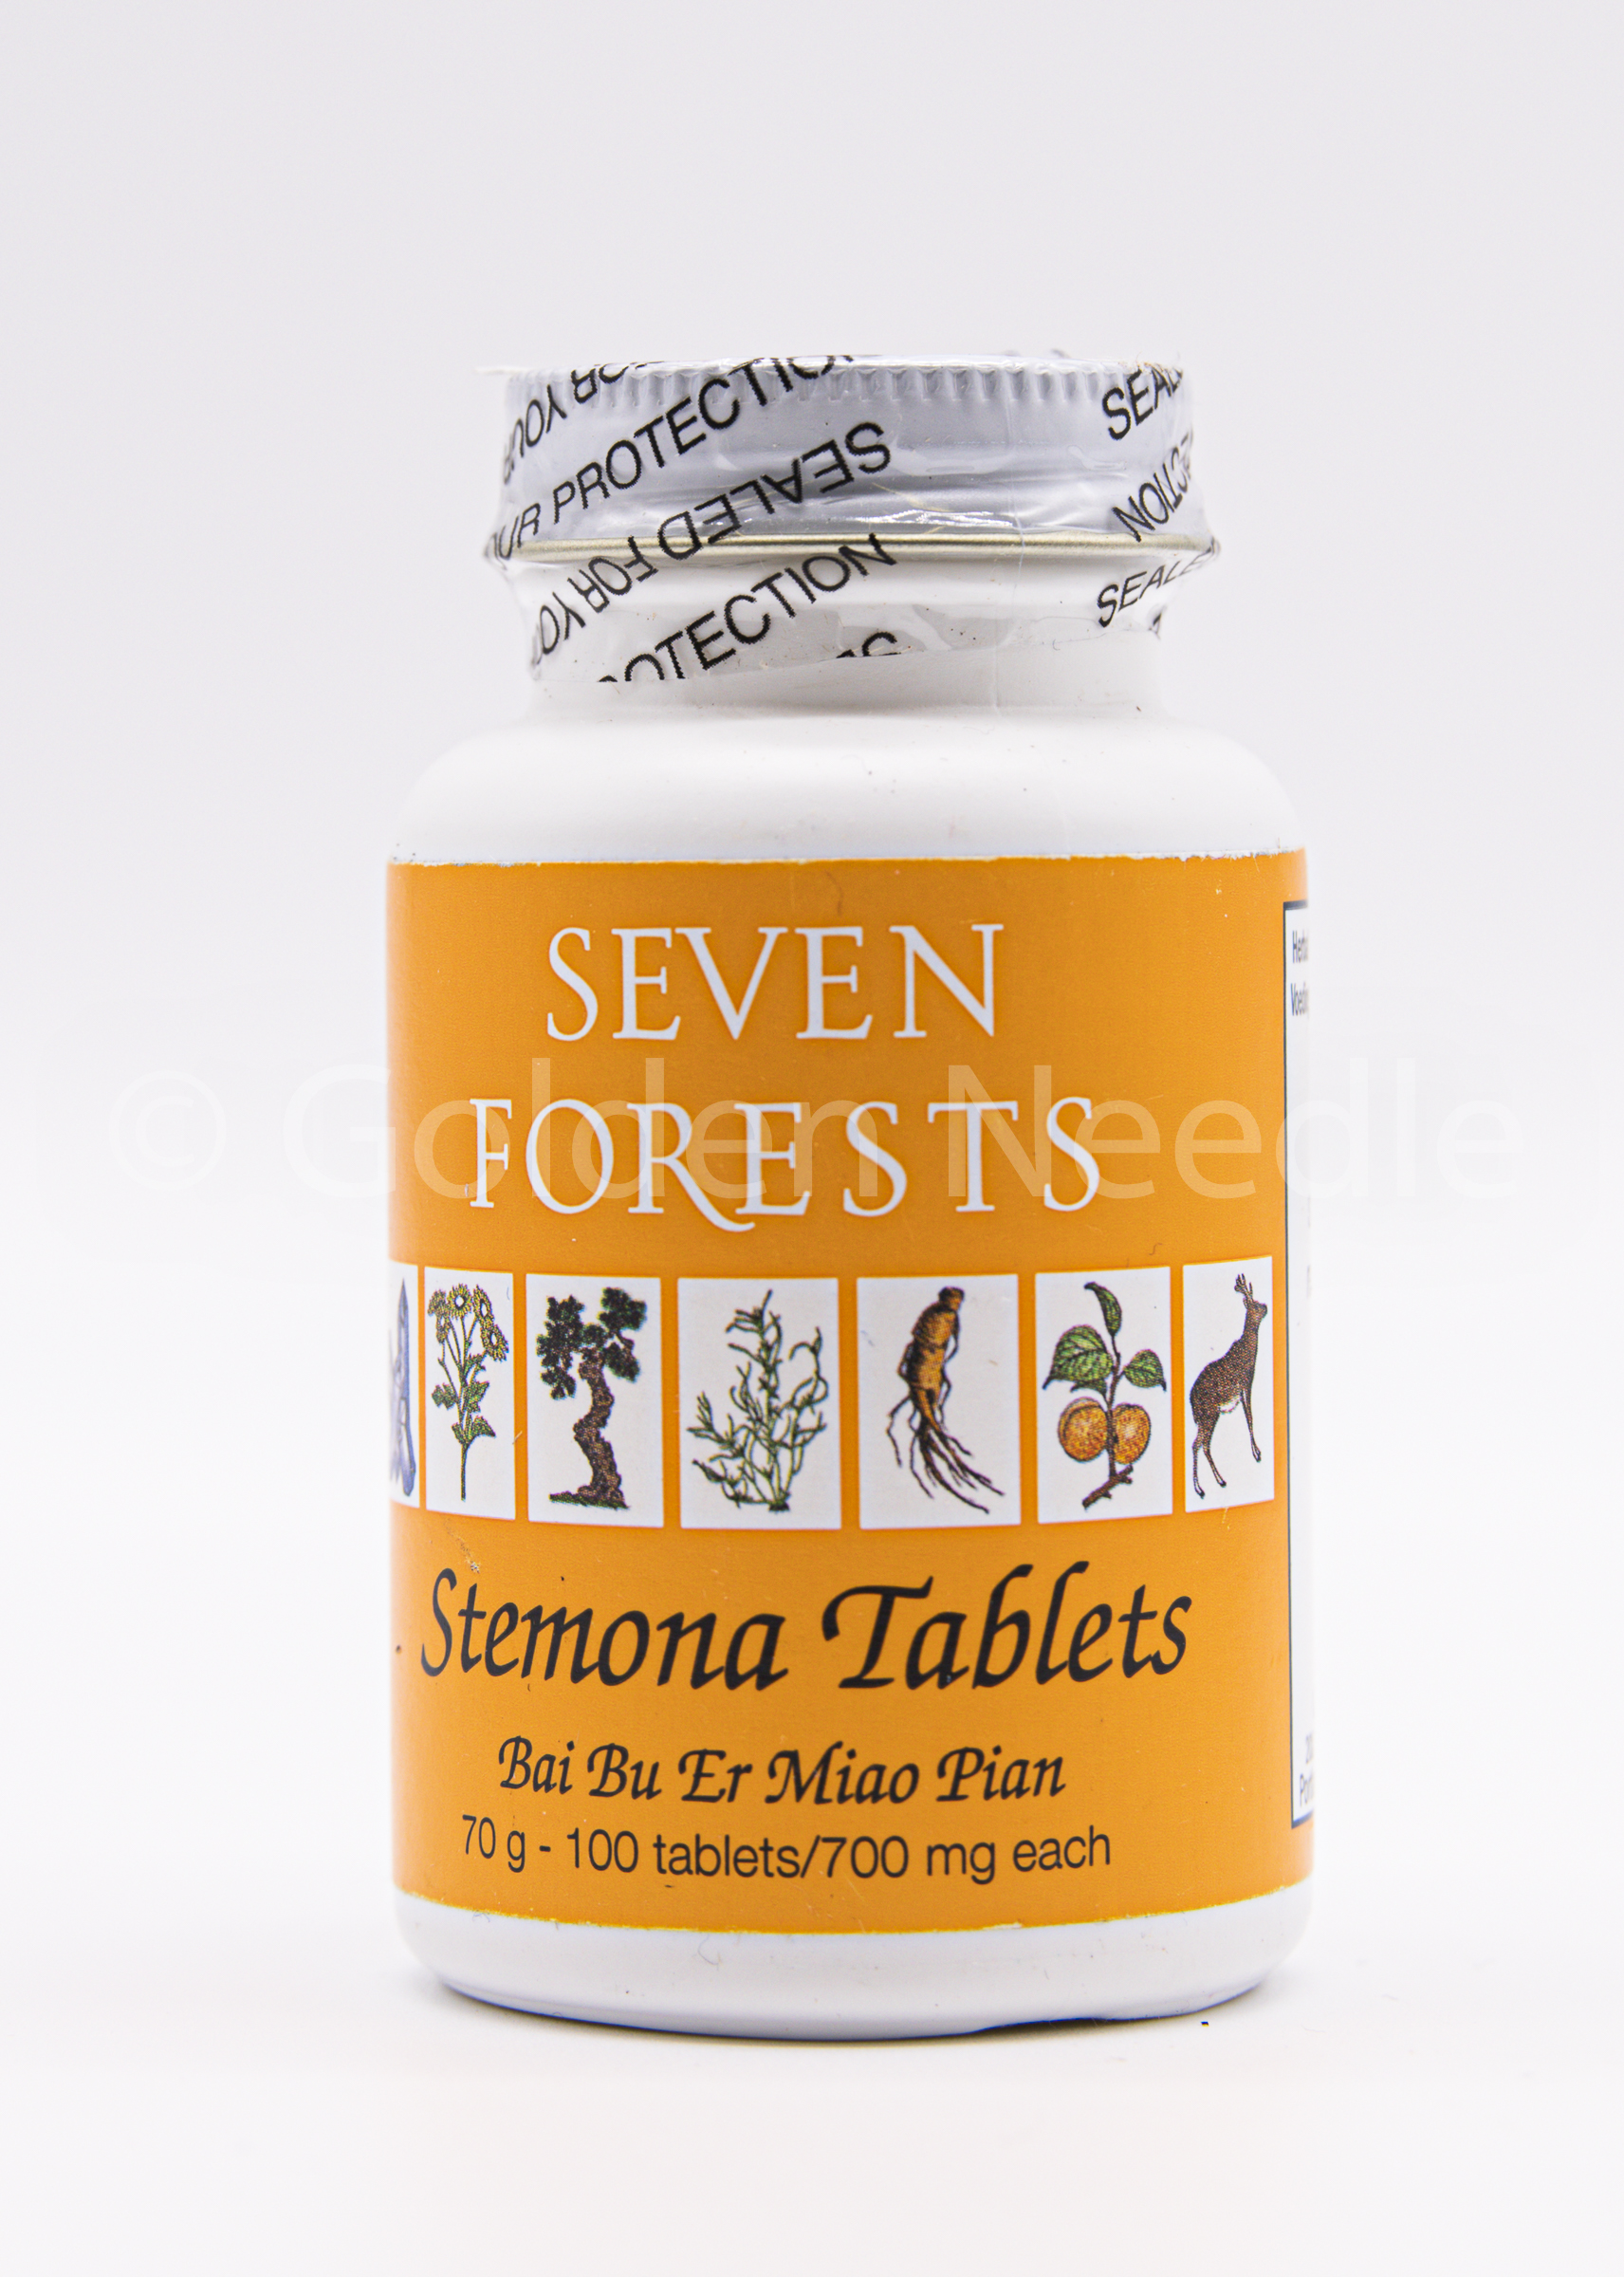 Stemona Tablets, 100 tablets